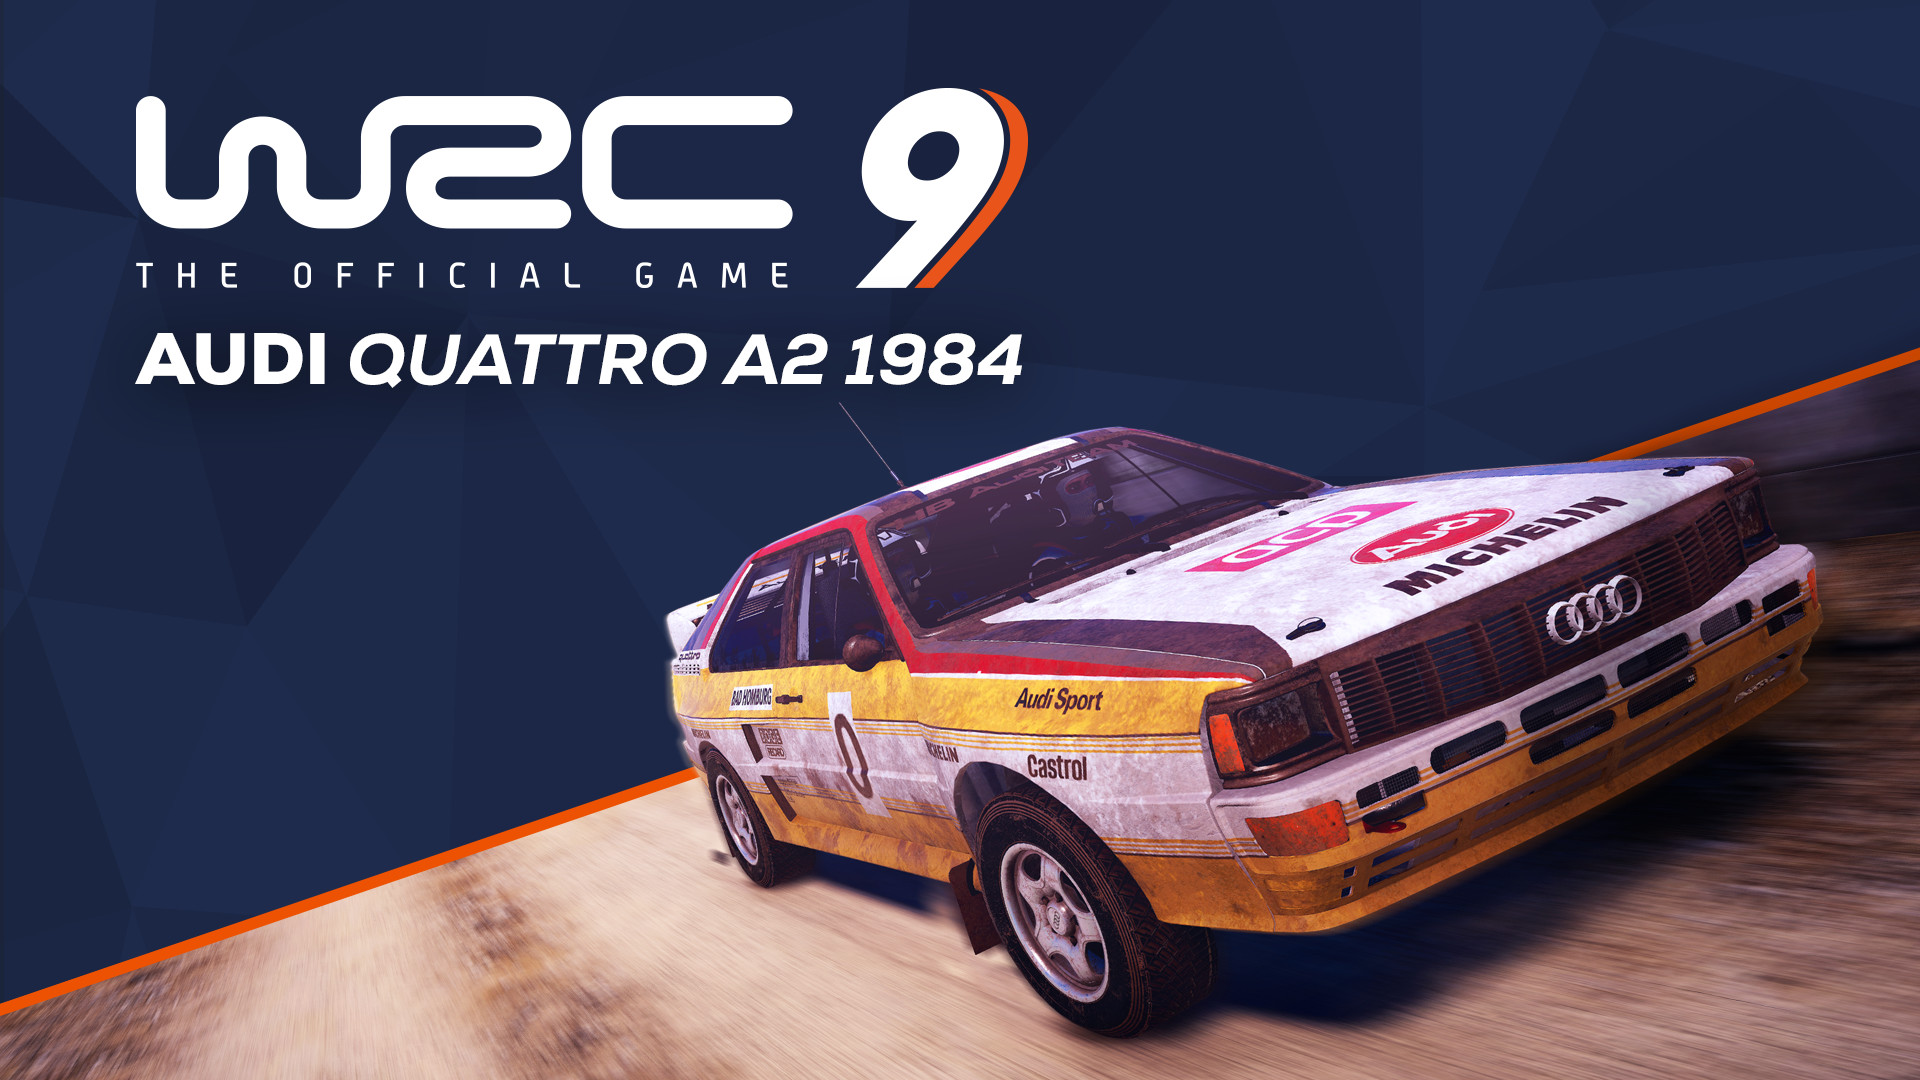 WRC 9 - Audi Quattro A2 1984 DLC Steam CD Key